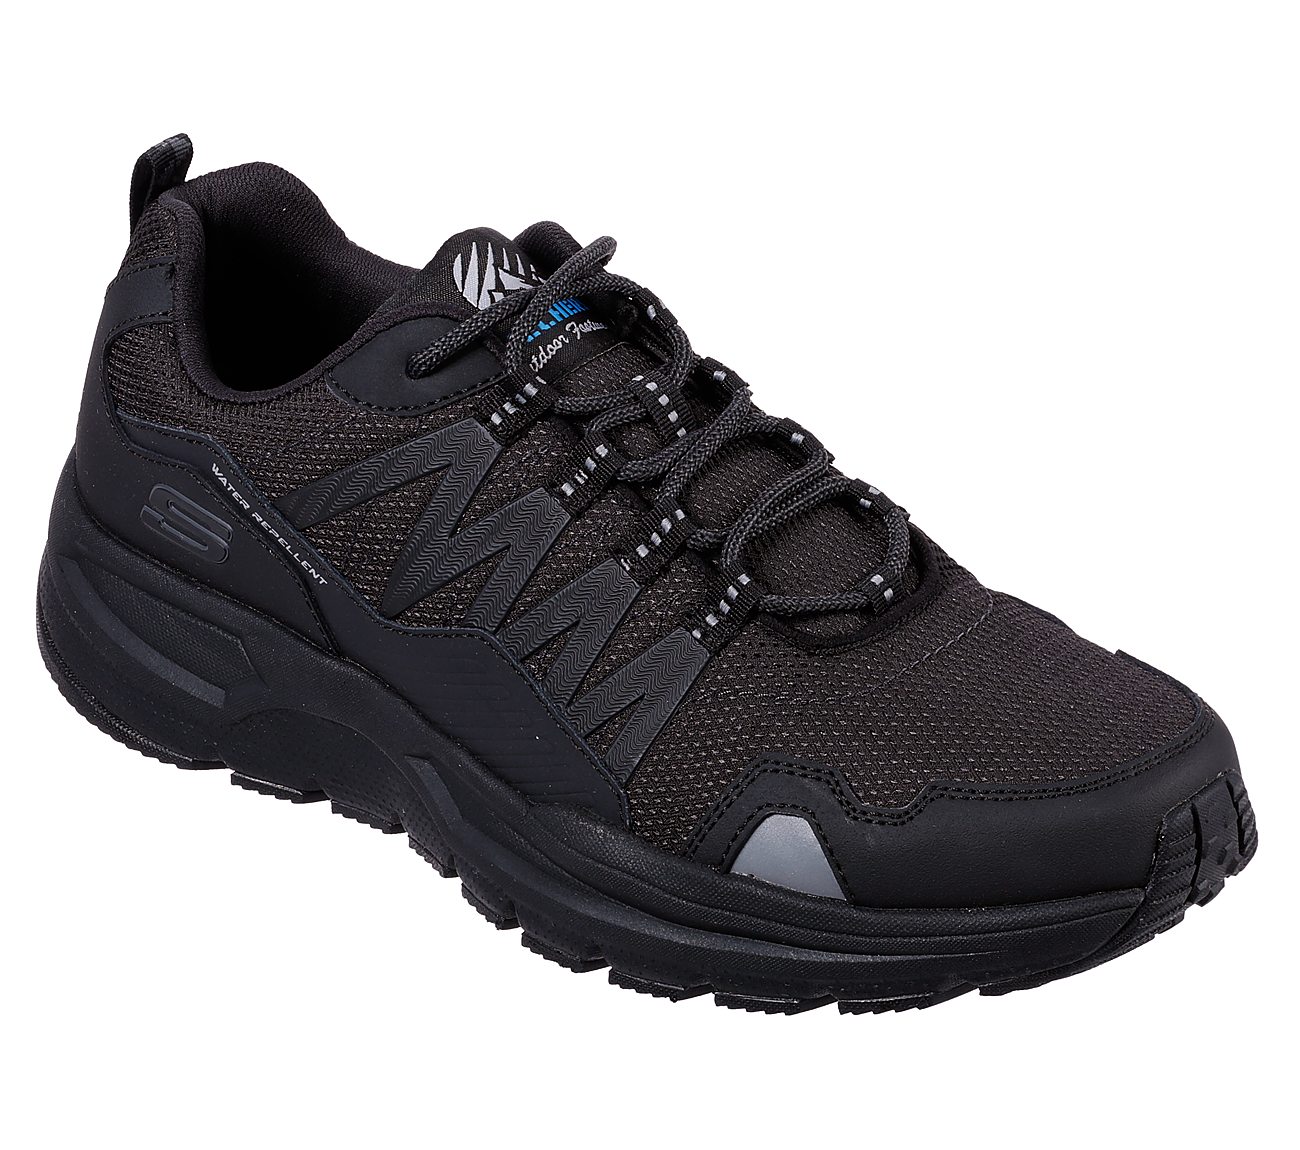 Wandern: Trekking-Schuhe von Skechers online kaufen im JoggenOnline Shop.